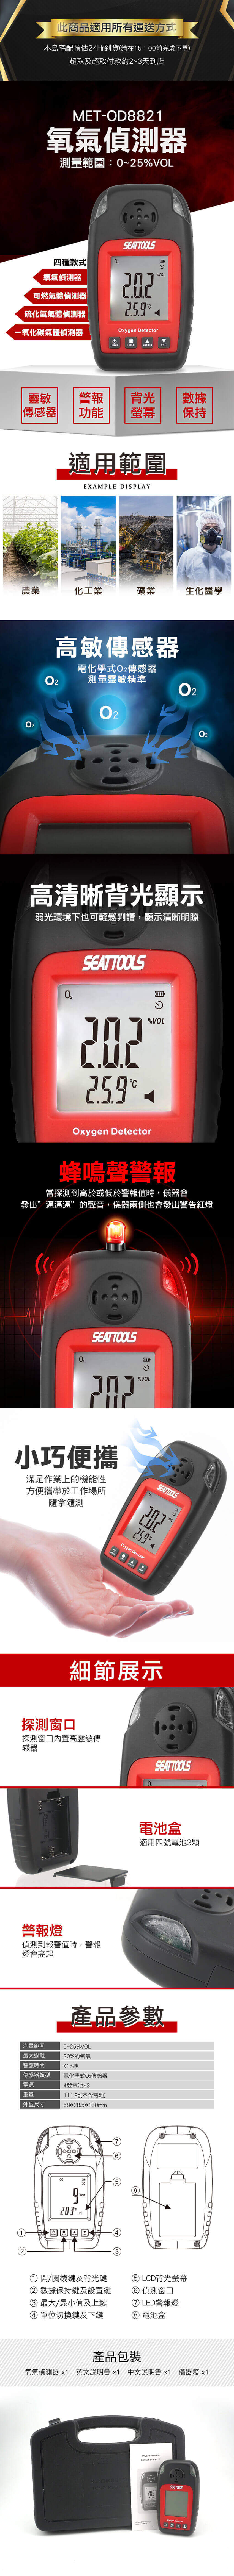 氧氣測試儀 工業濃度報警器 氧氣偵測計 MET-OD8821 微型氧氣儀 O2氣體測試儀 LCD顯示